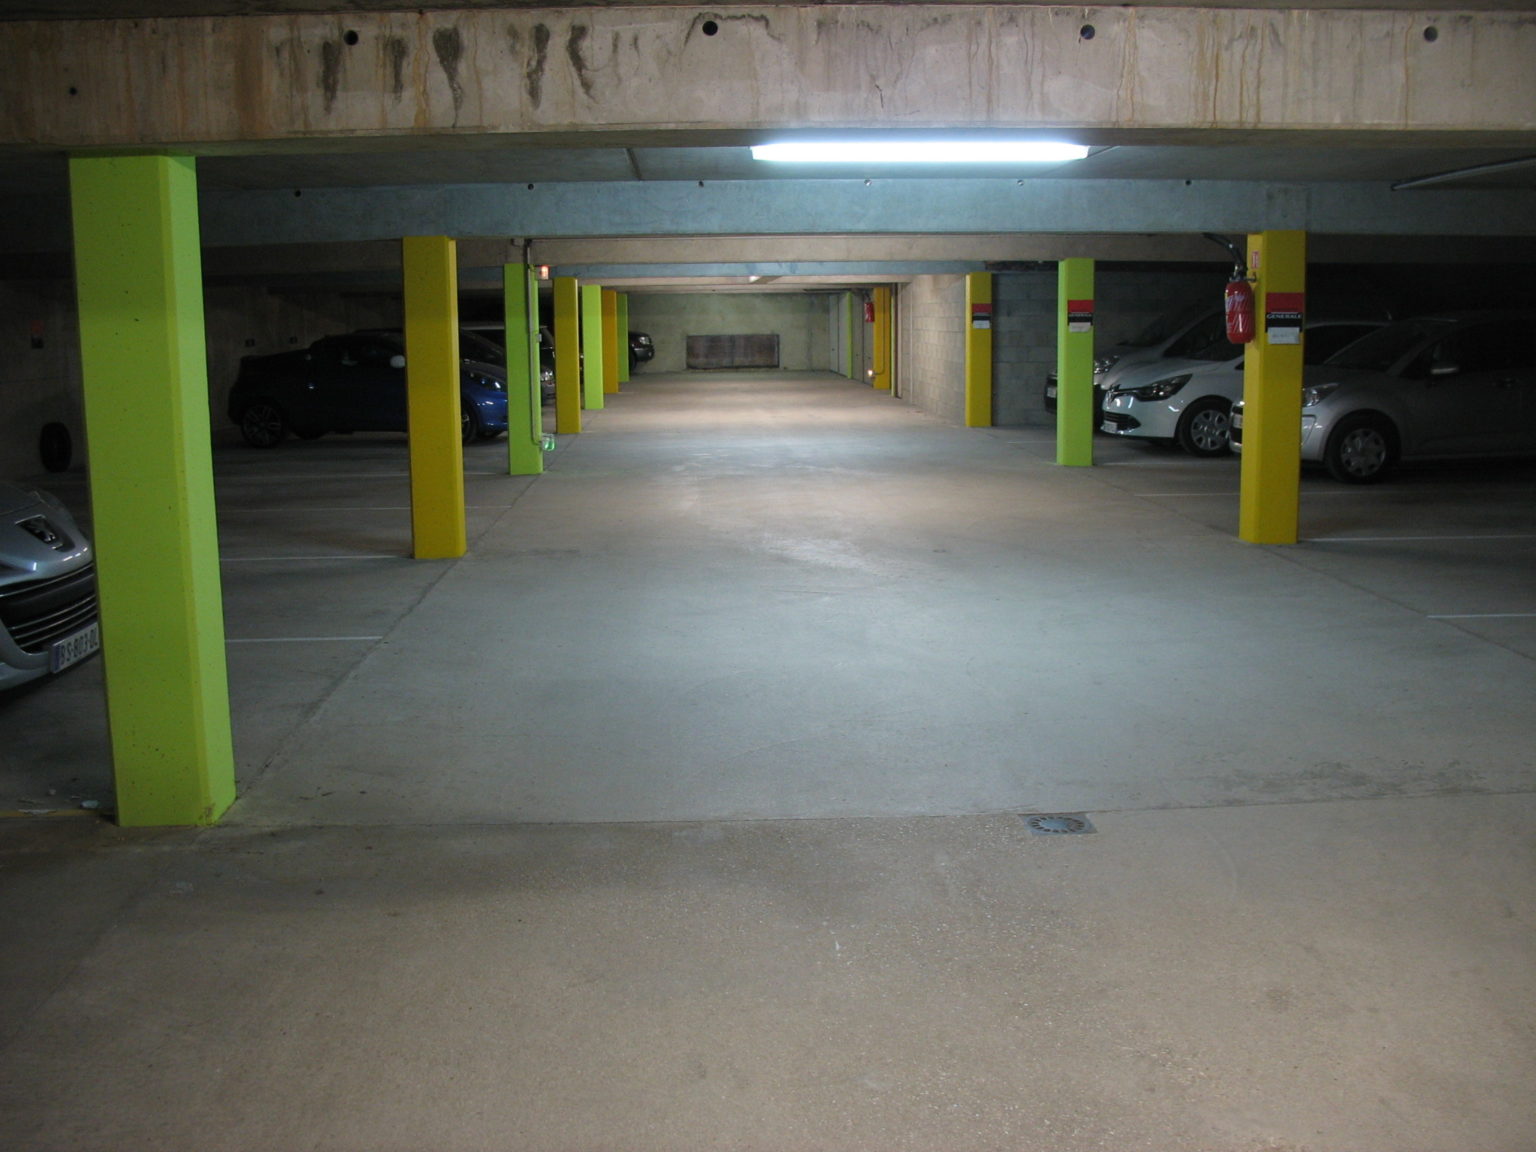 Photographie dans un garage souterrain où les colonnes ont été repeintes en vert pomme et jaune